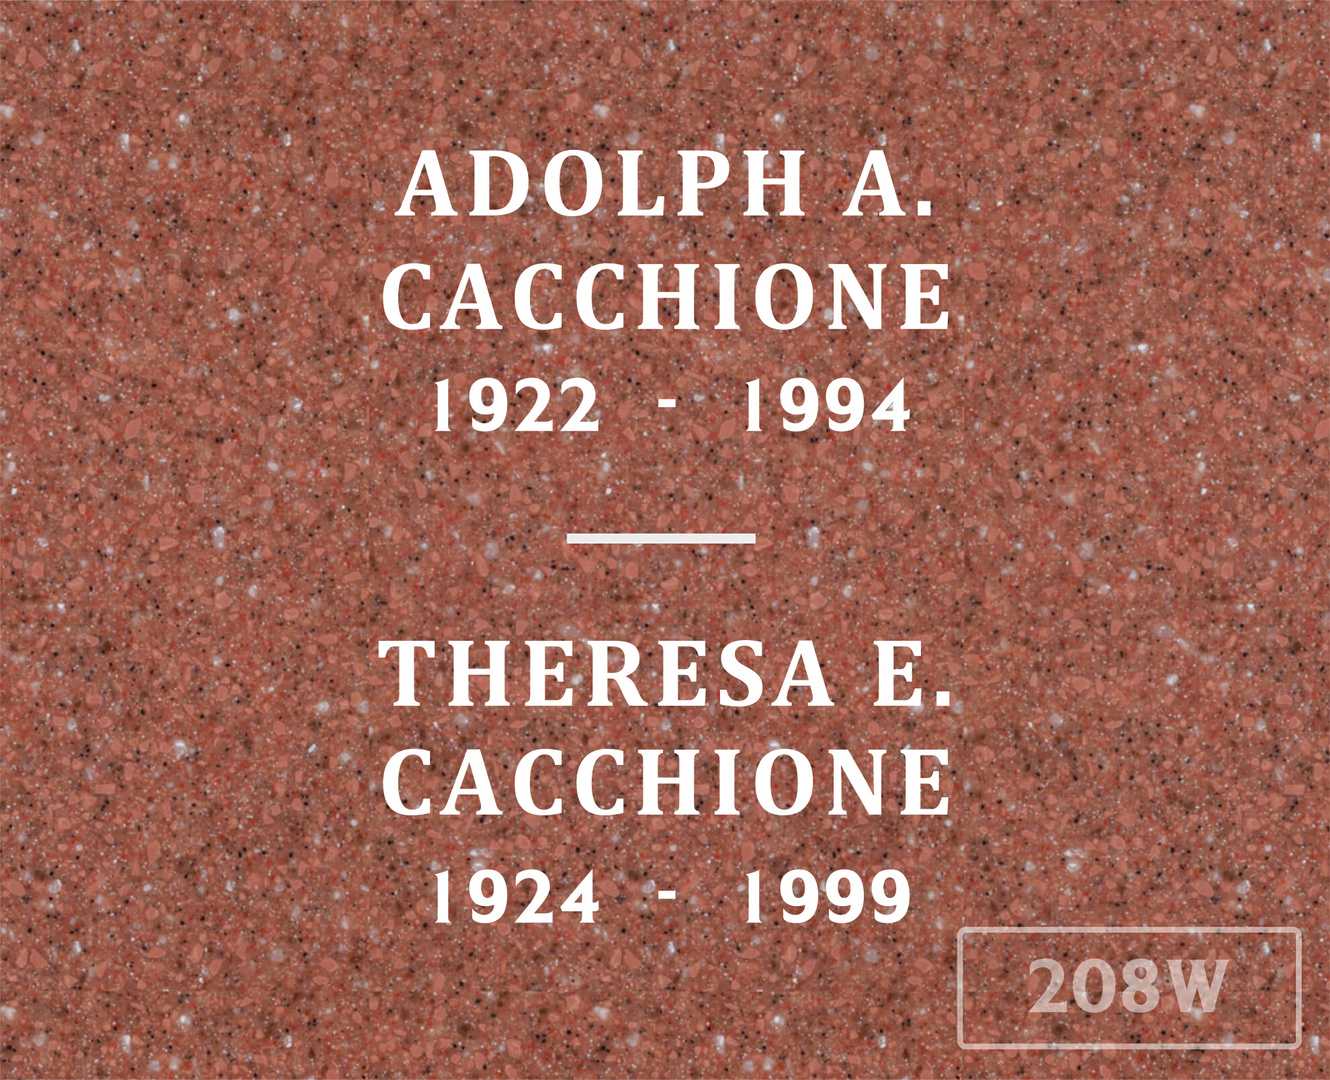 Theresa E. Cacchione's grave